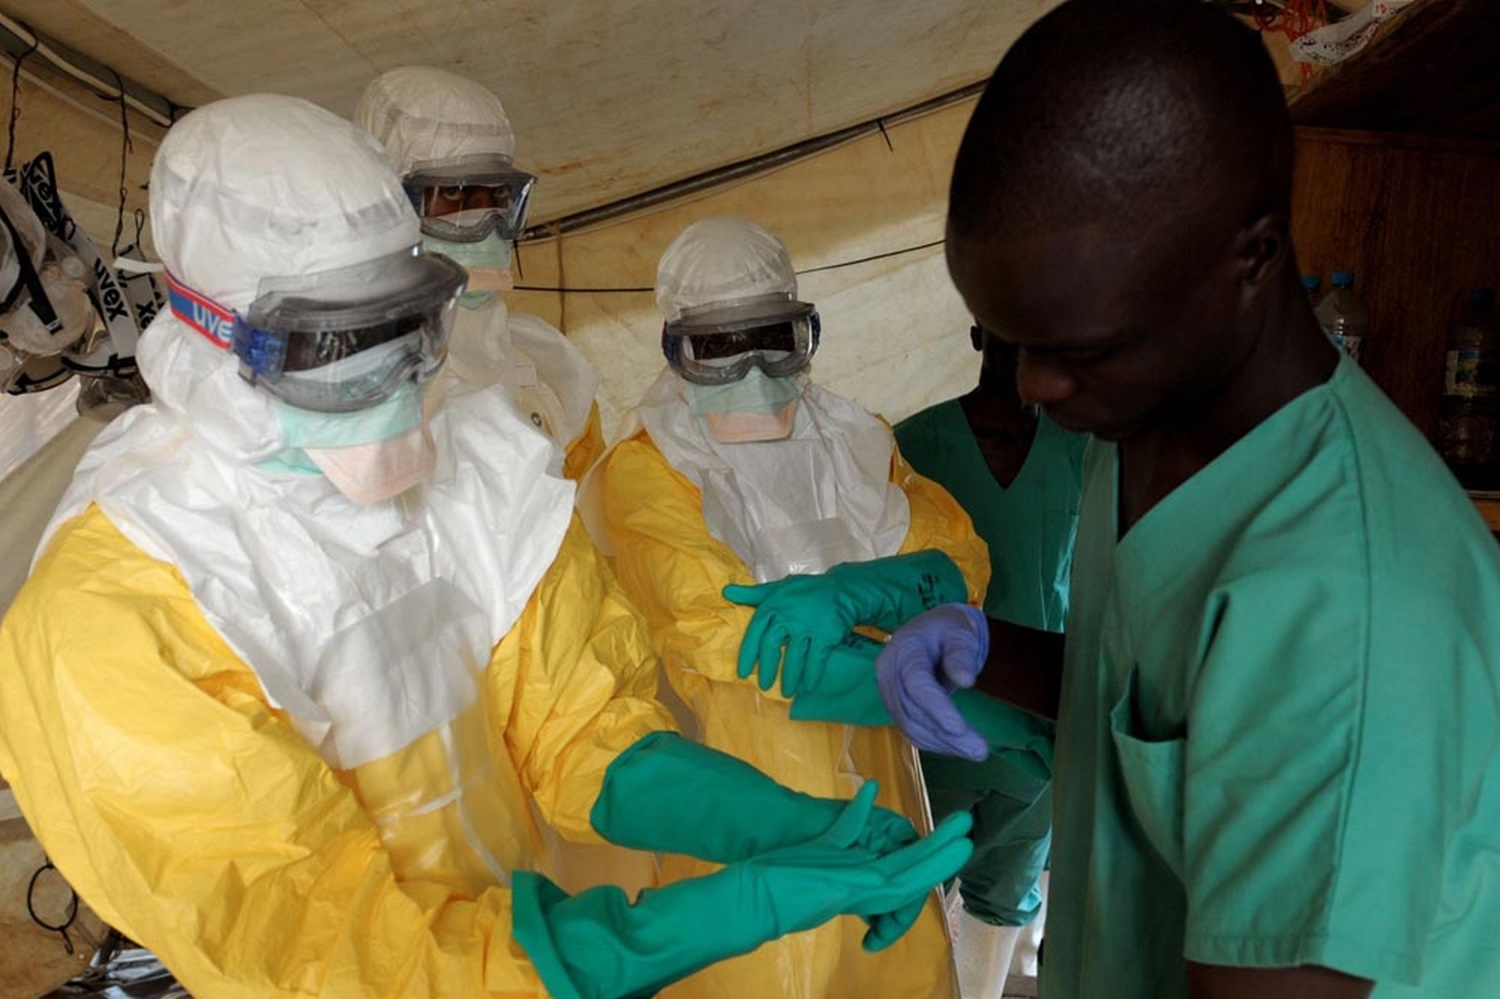 Agentes da Organização Mundial de Saúde atendem pessoas com ebola